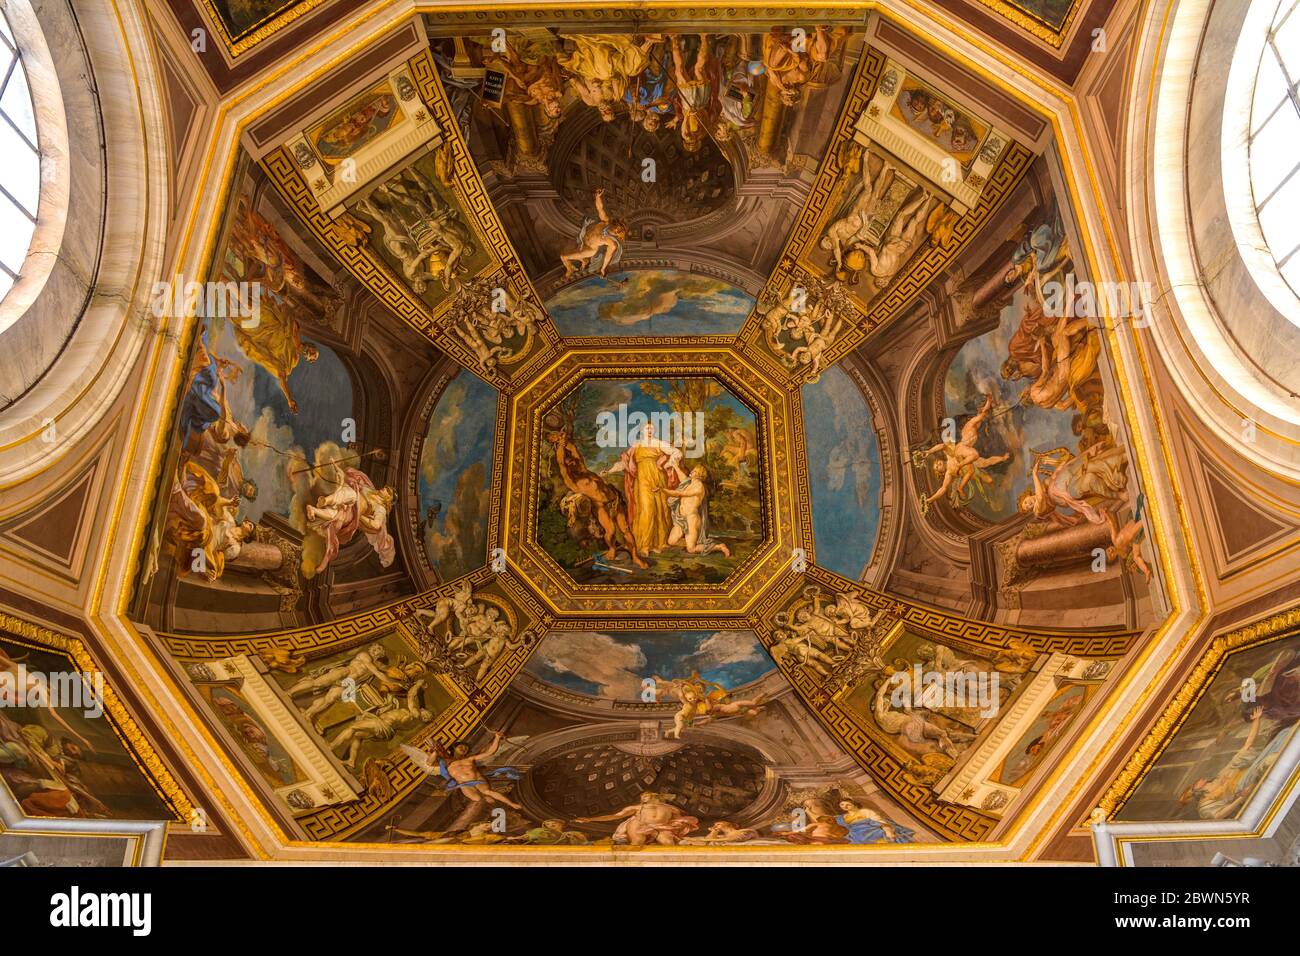 Bemalte Decke - Detail der Fresken von Tommaso Conca an der Gewölbedecke des Musensaals im Museum der Vatikanischen Museen von Pio Clementino. Stockfoto